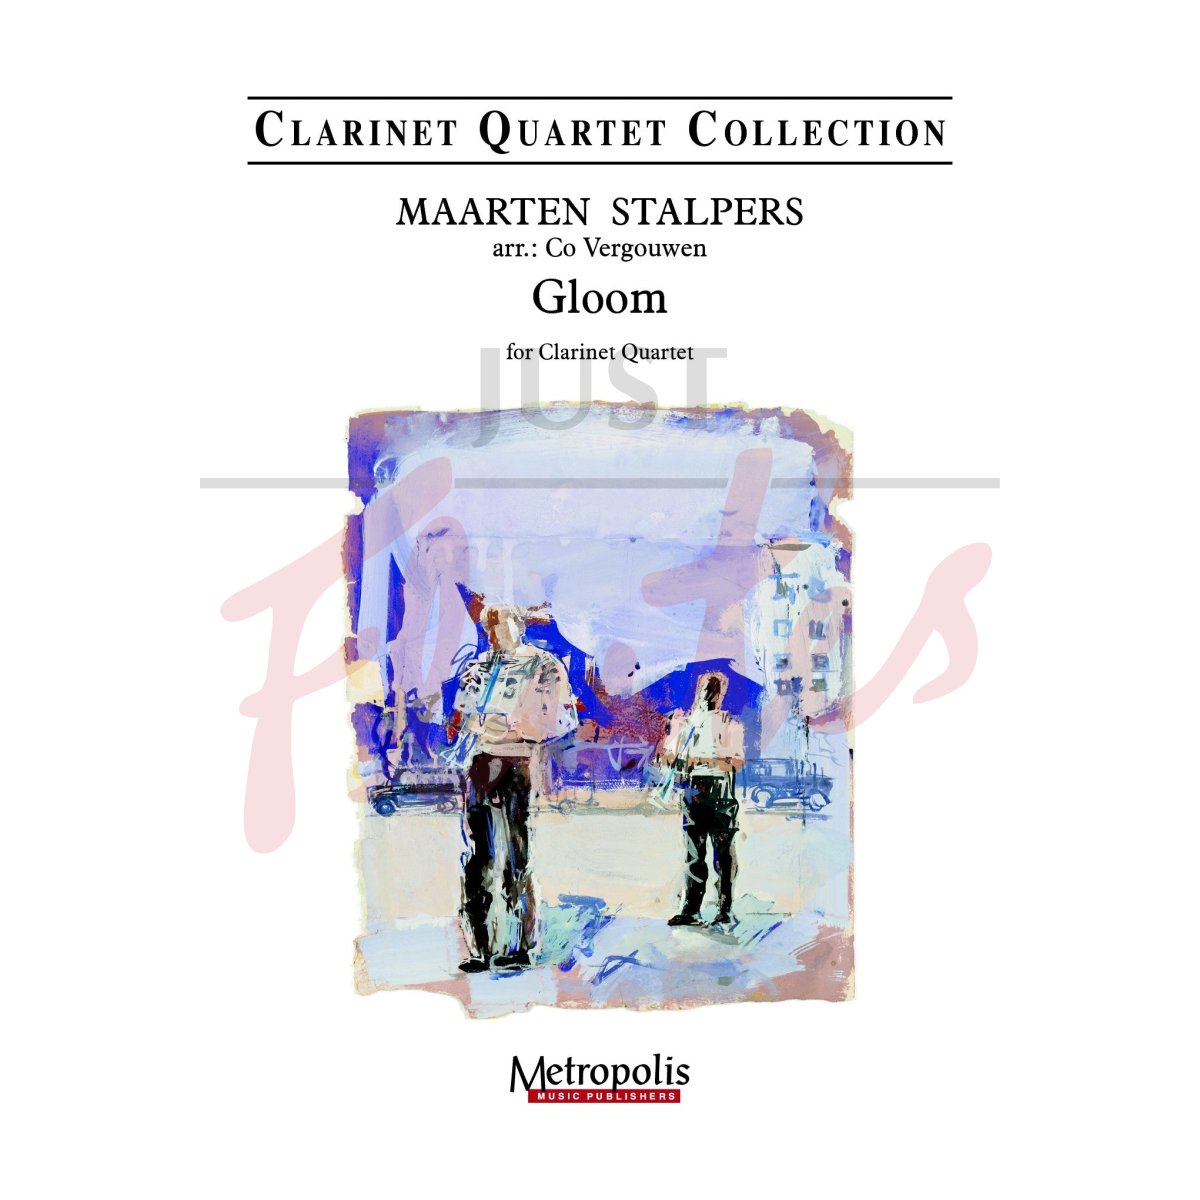 Gloom for Clarinet Quartet